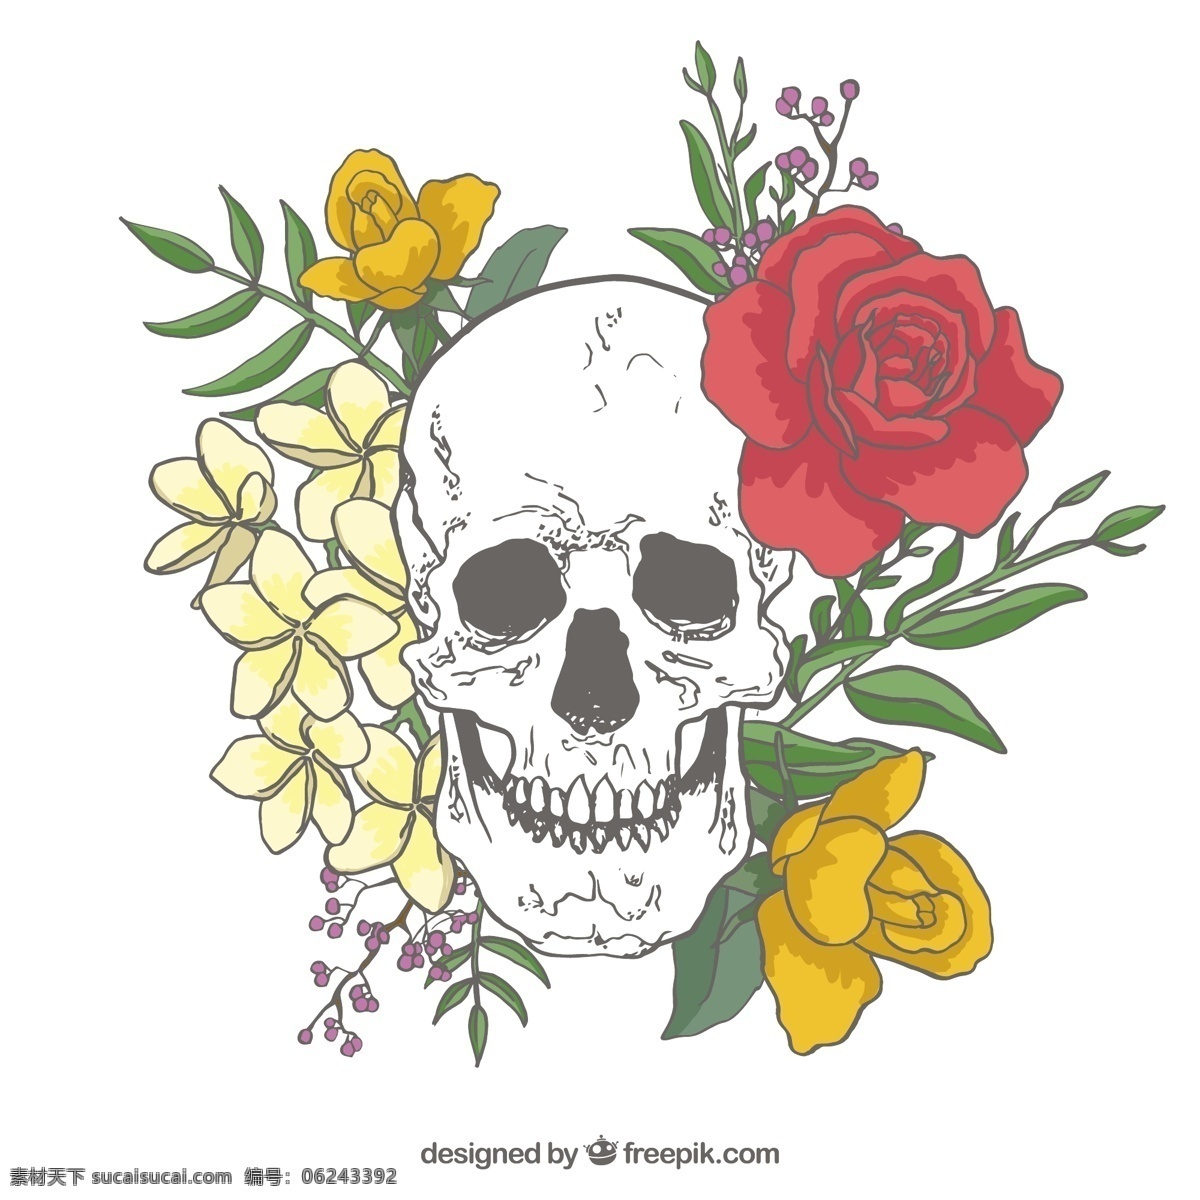 头骨 背景 玫瑰 手工 绘制 叶子 花卉 手 自然 花卉背景 手绘 树叶 装饰 绘画 自然背景 骨骼 背景花 哥特式